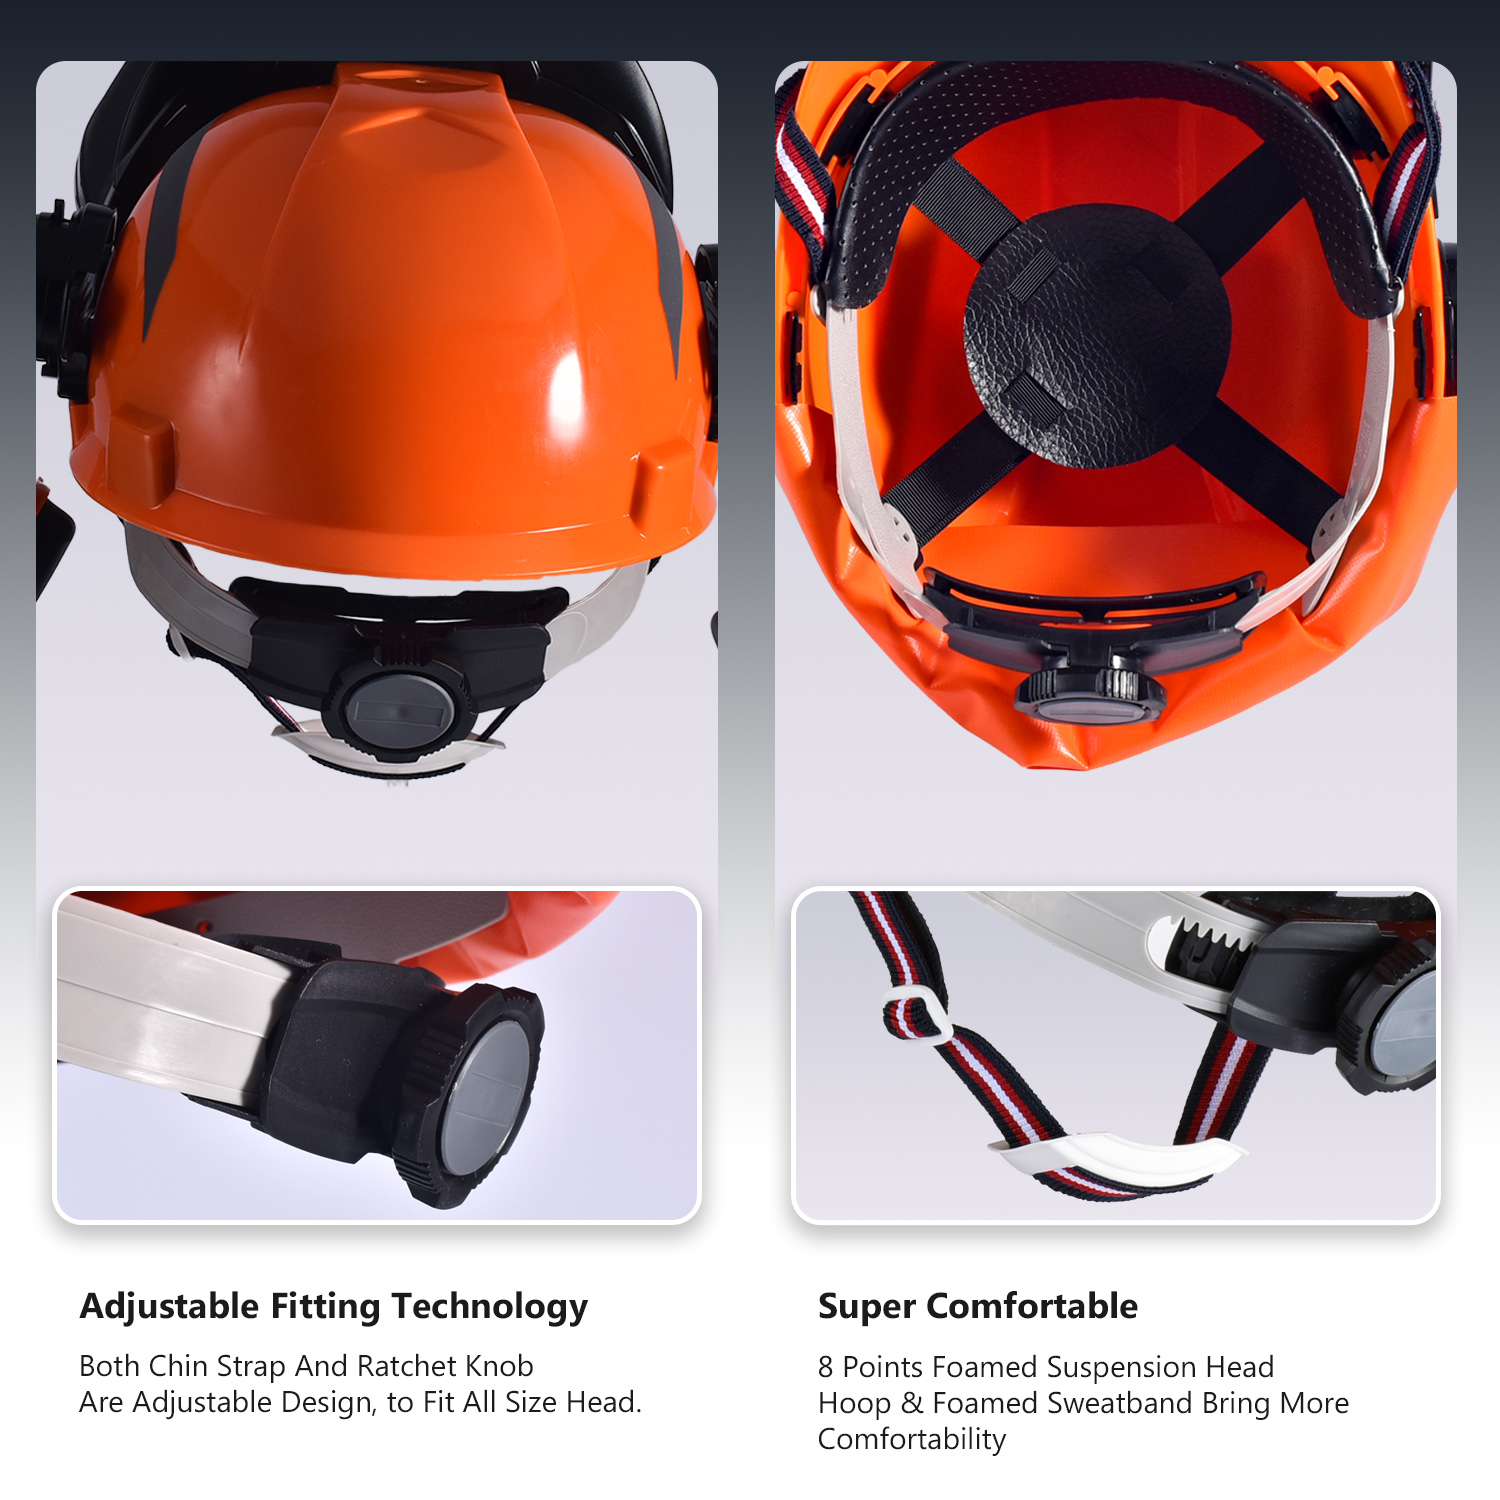 Лесные шлемы и защита за защиту лица M-5009 Orange